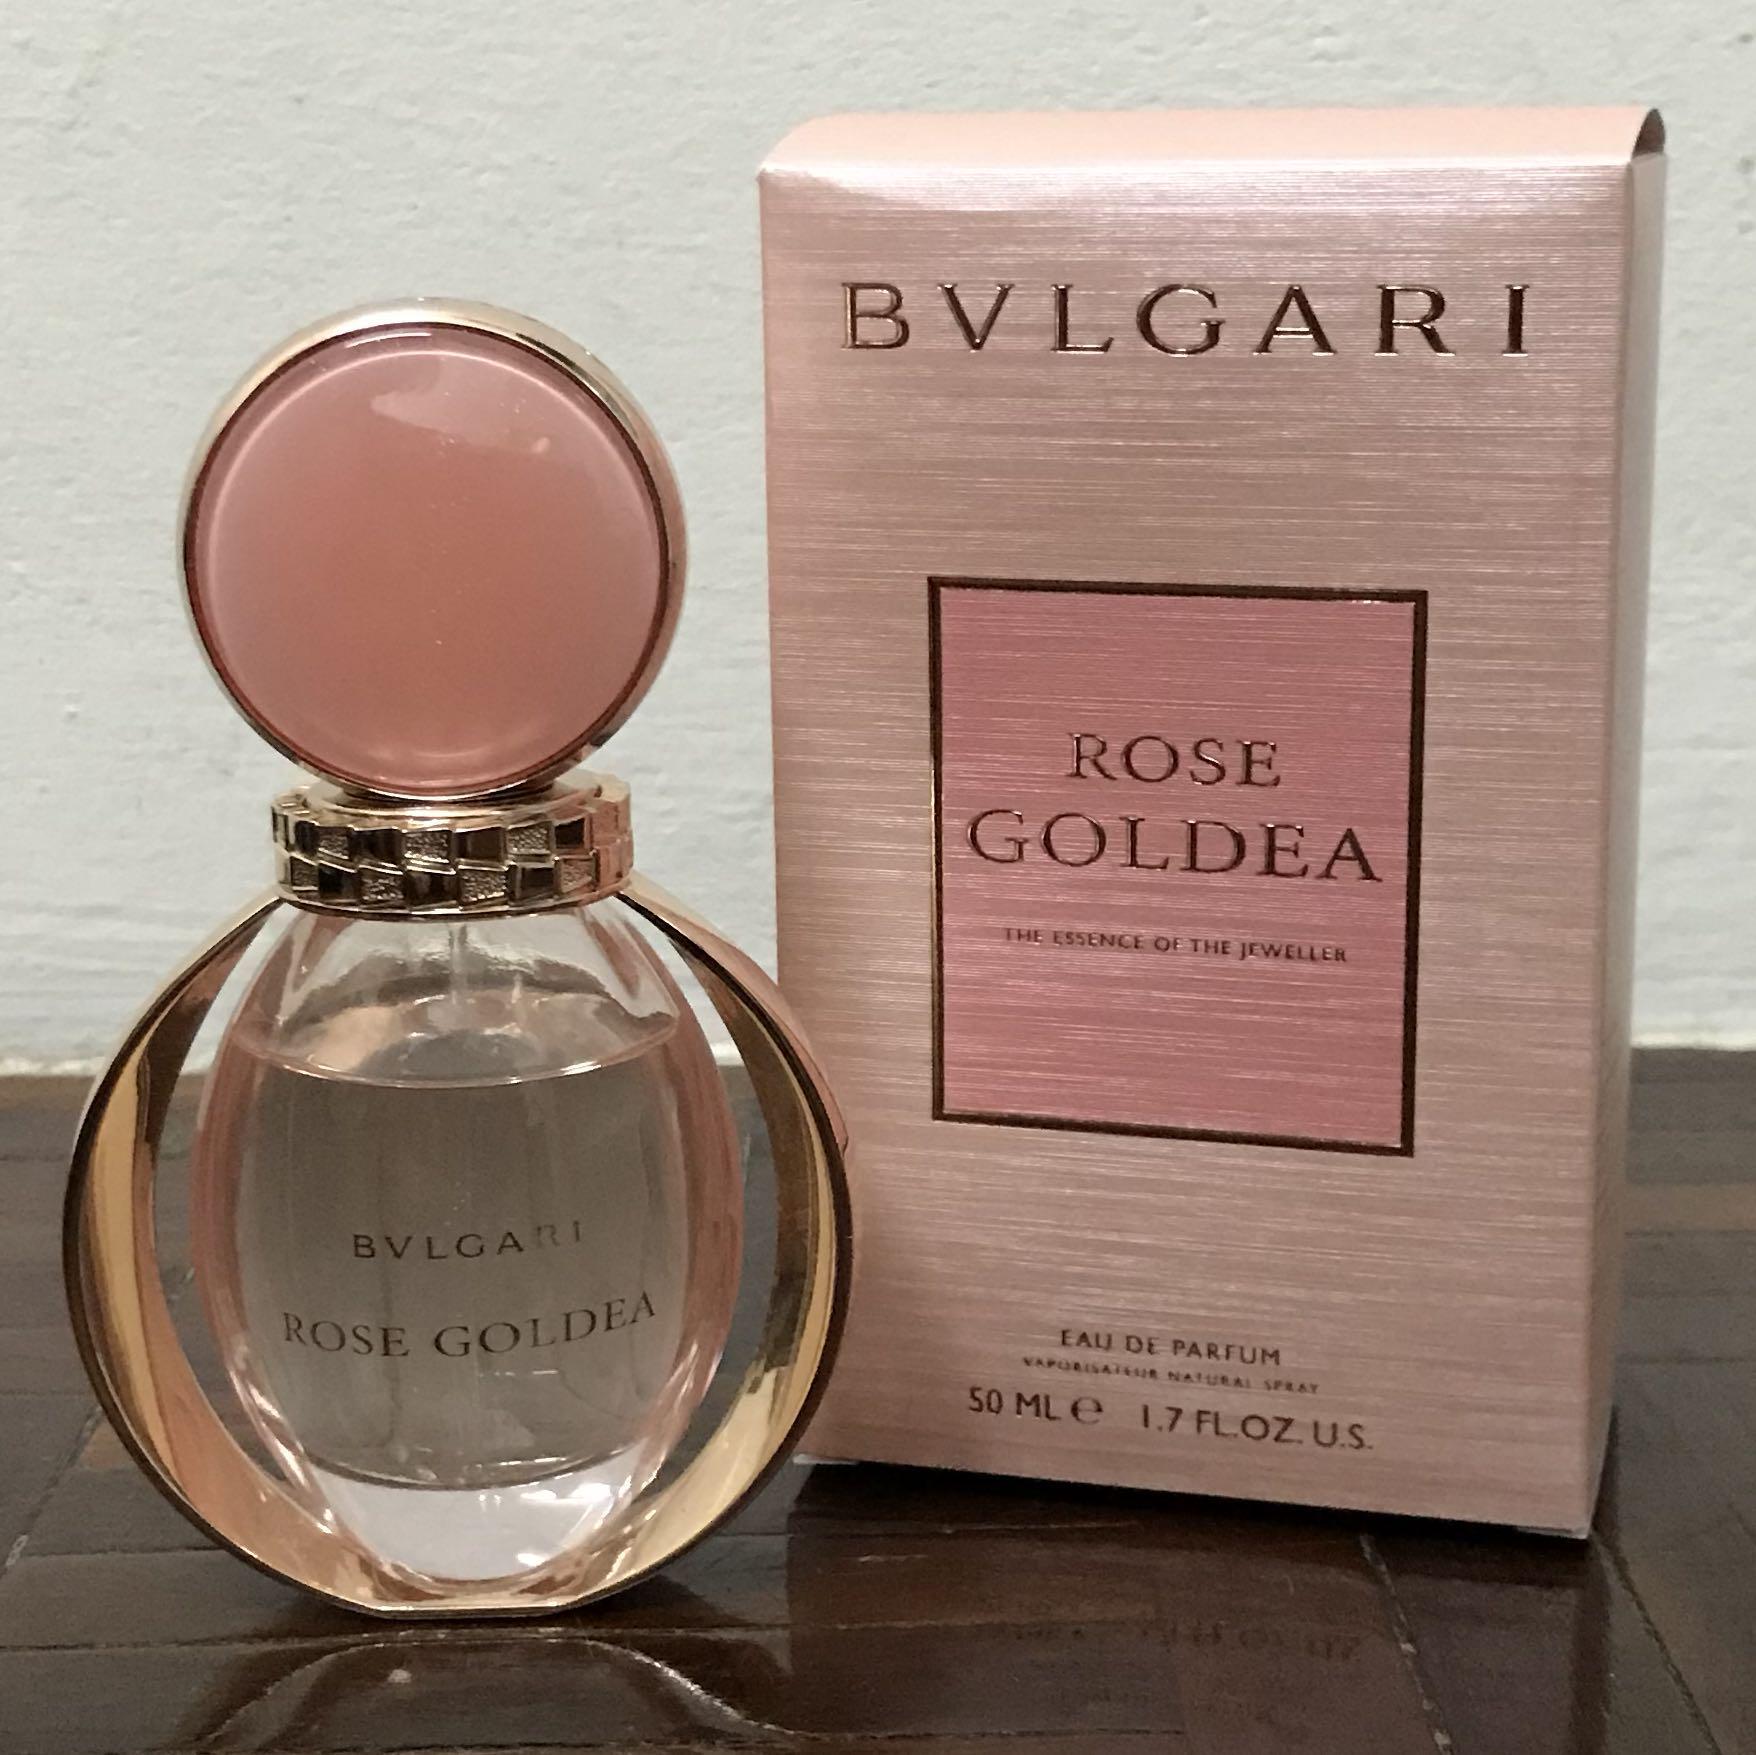 bvlgari rose goldea 50ml price